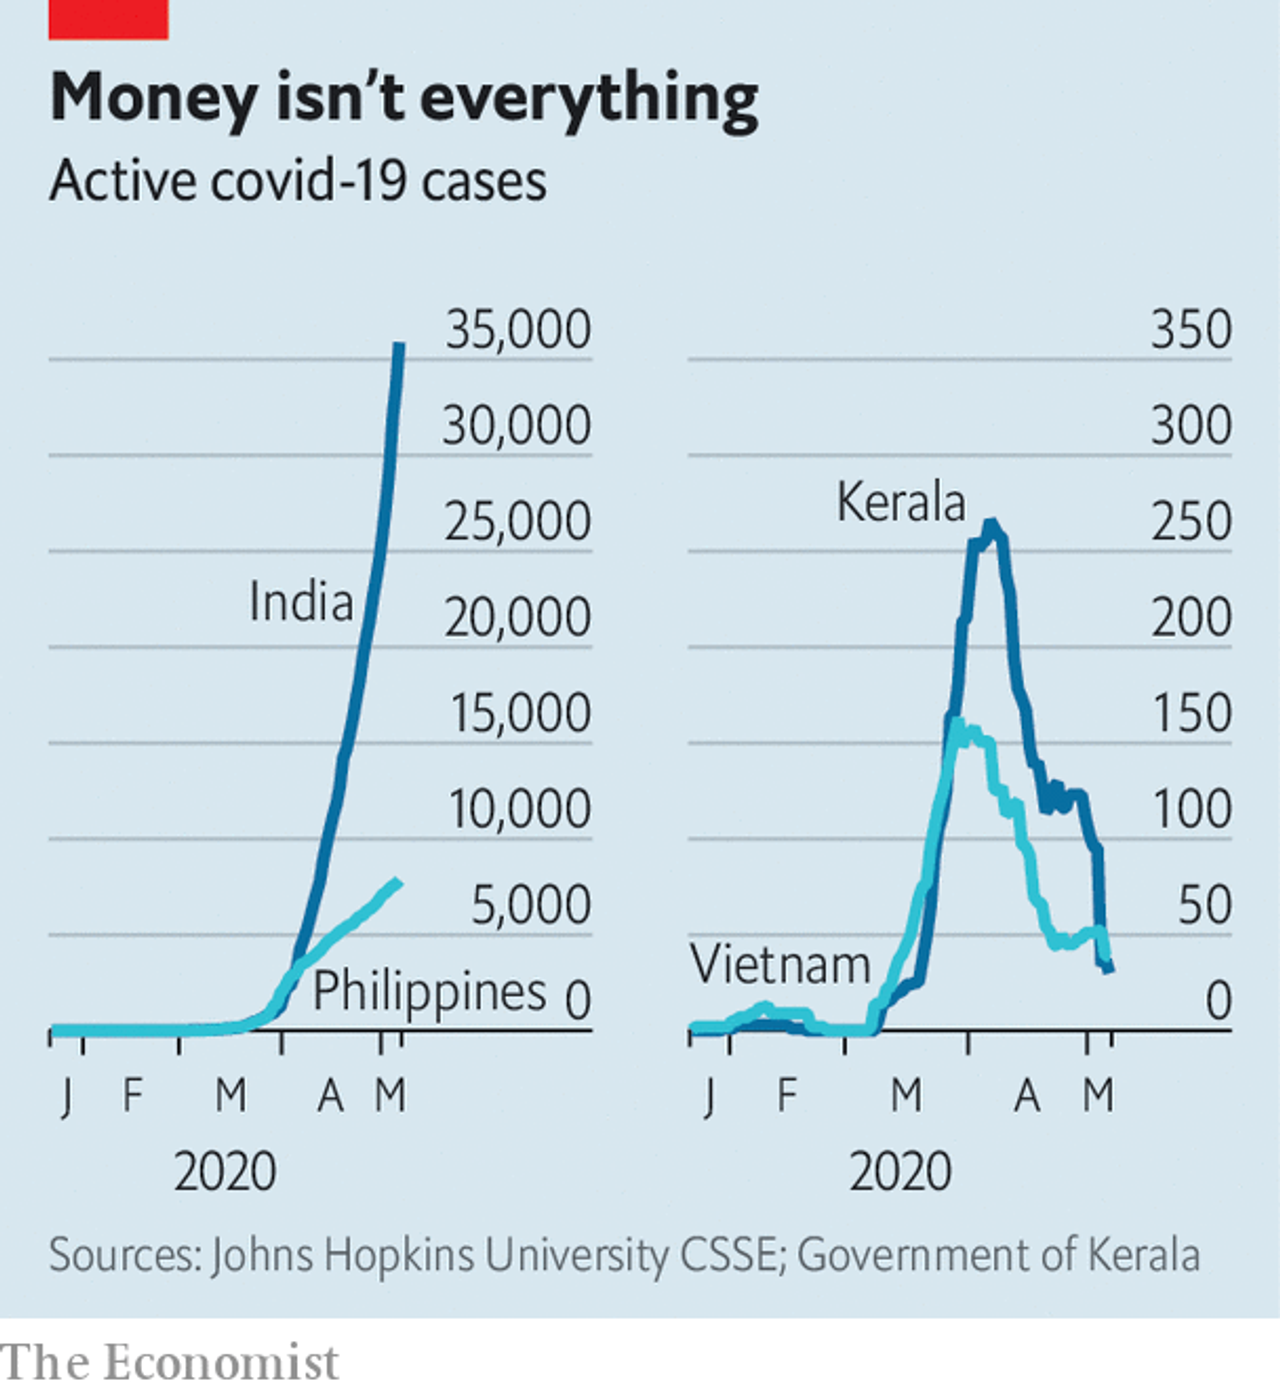 Гроші – не все: експоненційний ріст в Індії ліворуч, але приборкання епідемії в індійському штаті Керала праворуч